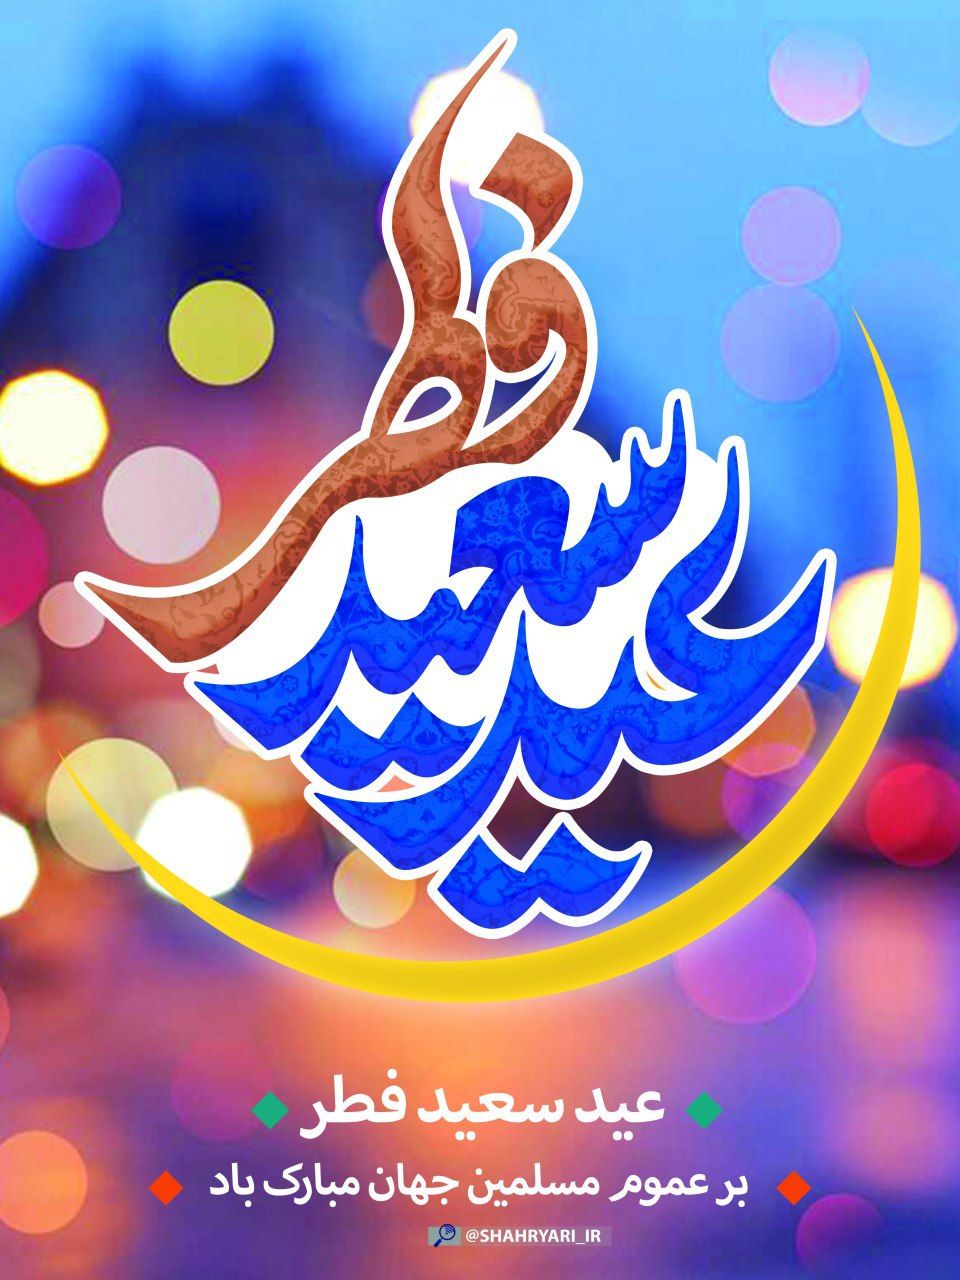 پیام تبریک شورای اسلامی شهر و شهردار میرآباد به مناسبت عید سعید فطر